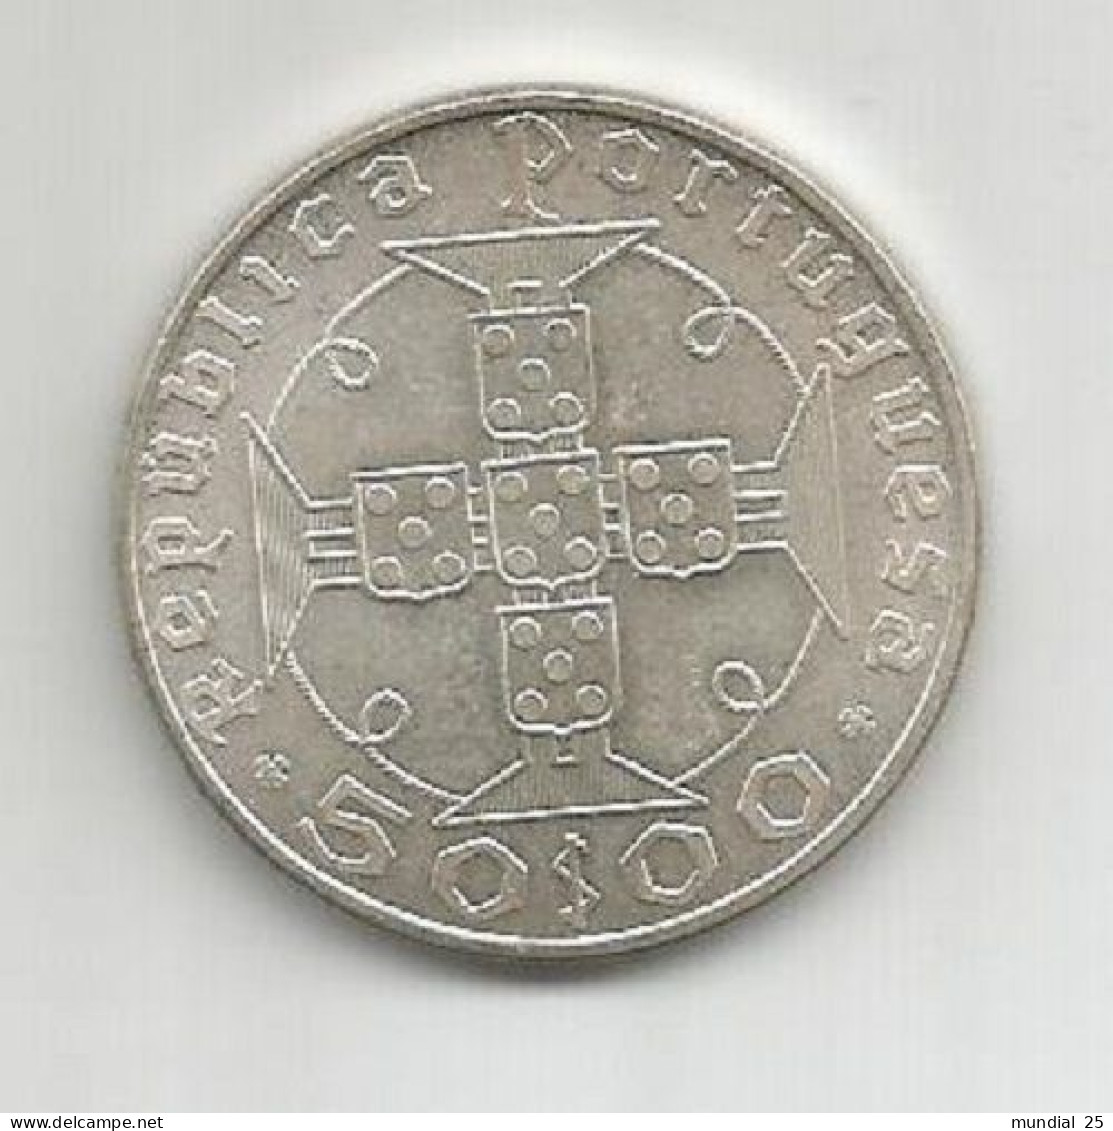 SAO TOME AND PRINCIPE PORTUGAL 50$00 ESCUDOS 1970 SILVER - Sao Tome Et Principe